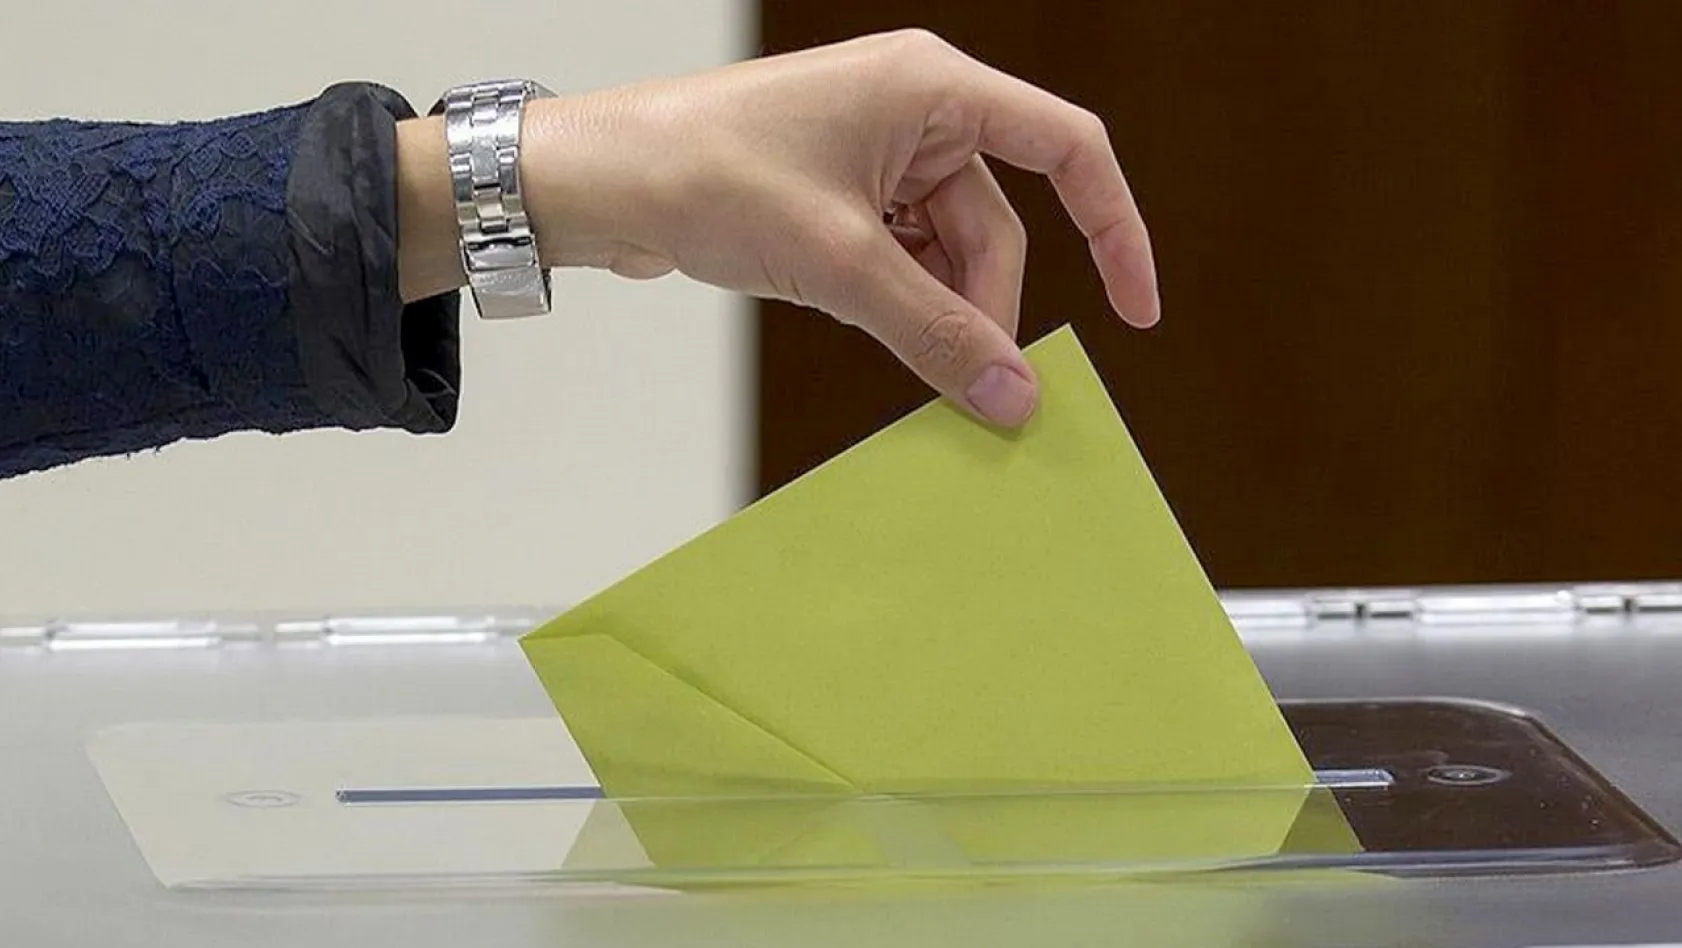 14 Mayıs seçimlerinde eski kimlikle oy kullanılabilecek mi?